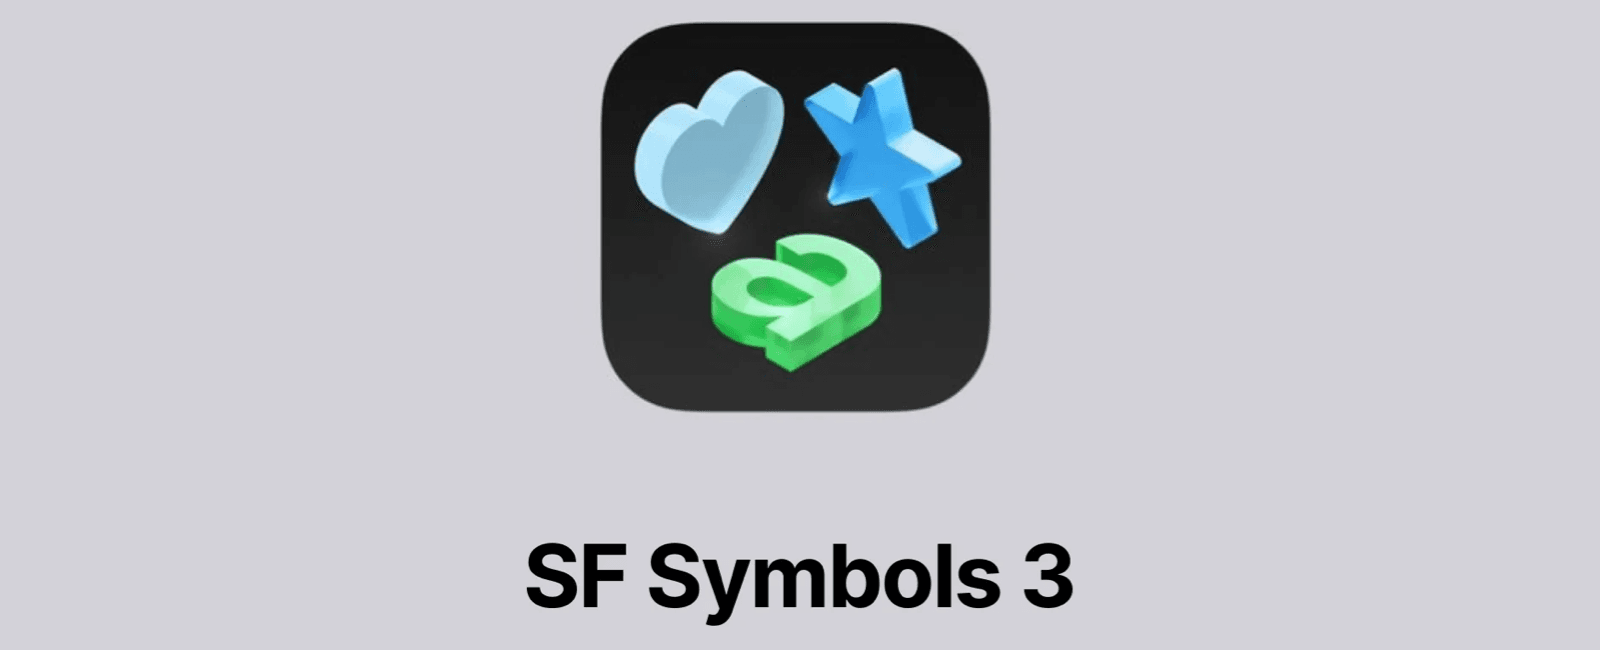 六、SF Symbols 图标库介绍